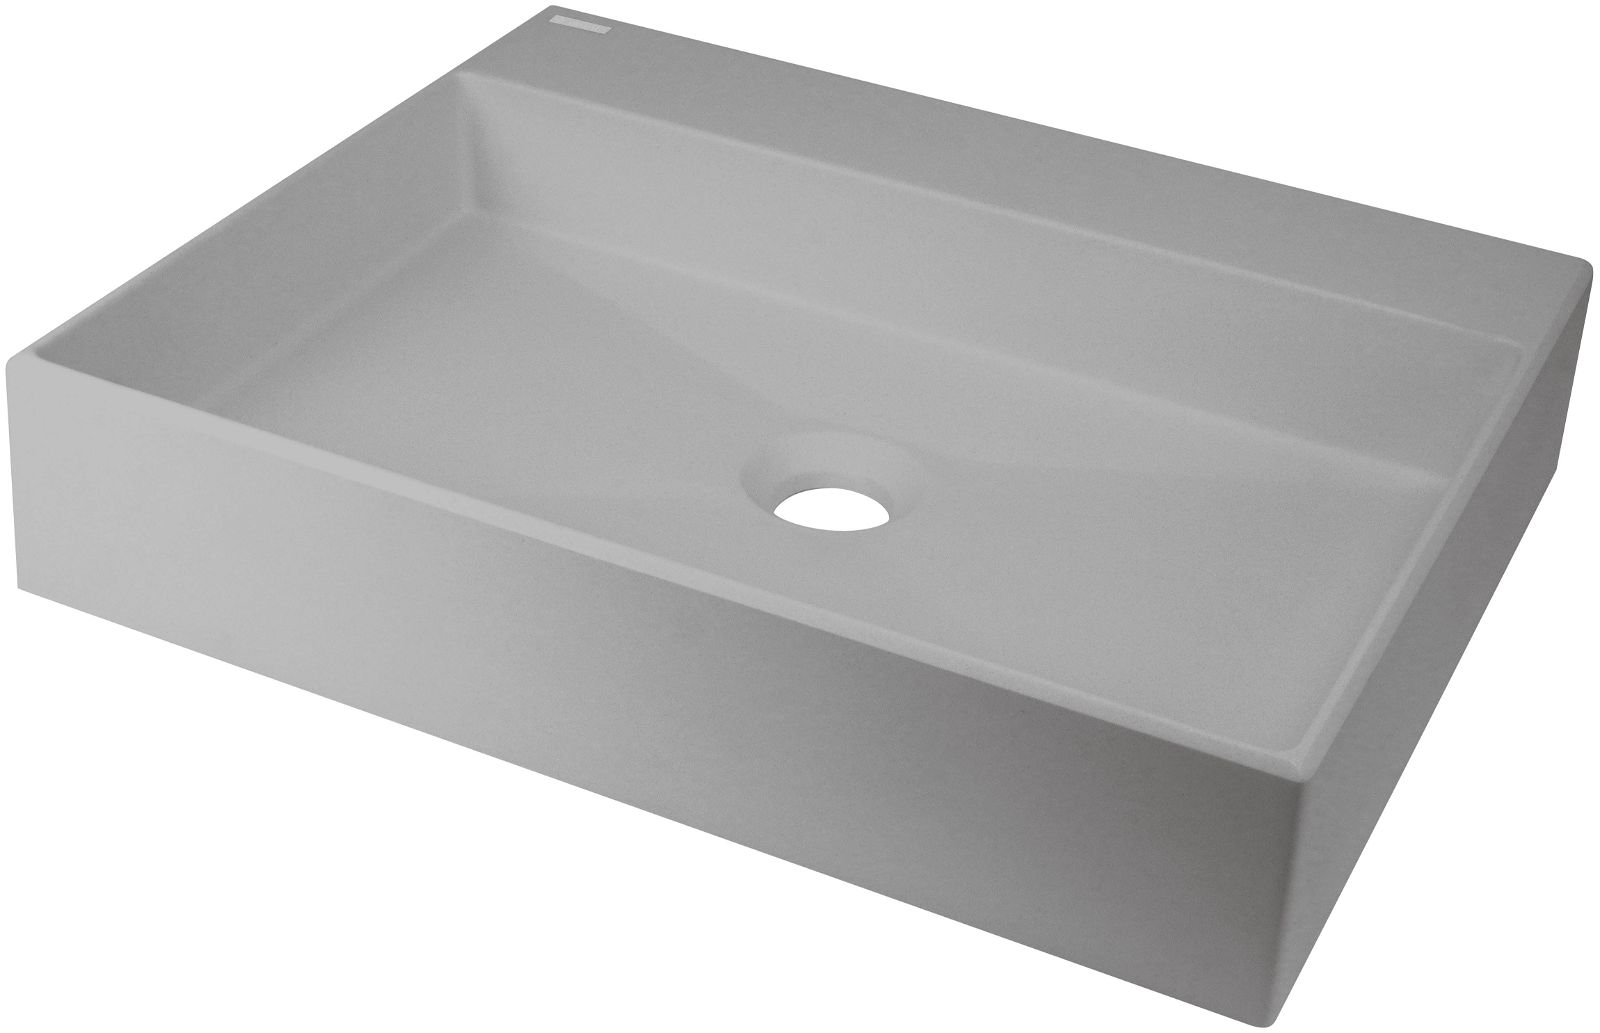 Granite washbasin, countertop - 500x400 mm - CQR_SU5S - Główne zdjęcie produktowe